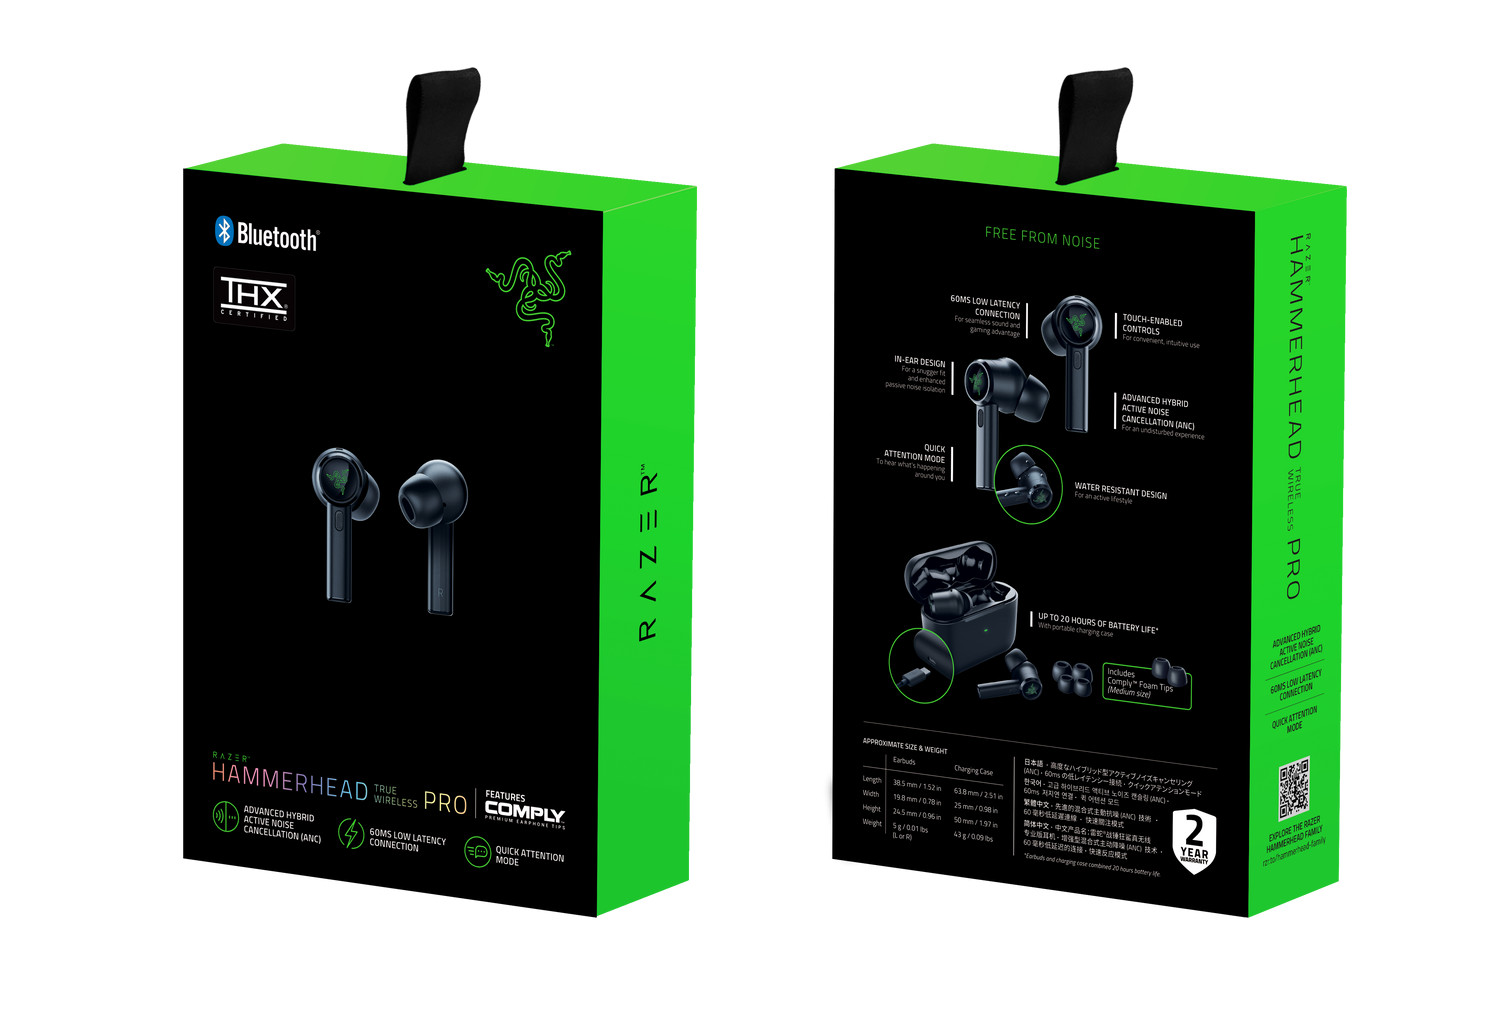 Tai nghe Razer Hammerhead Pro V2 – Analog Gaming &amp; Music In-Ear Headset - AP Packaging_RZ04-01730100-R3A1 - Hàng chính hãng